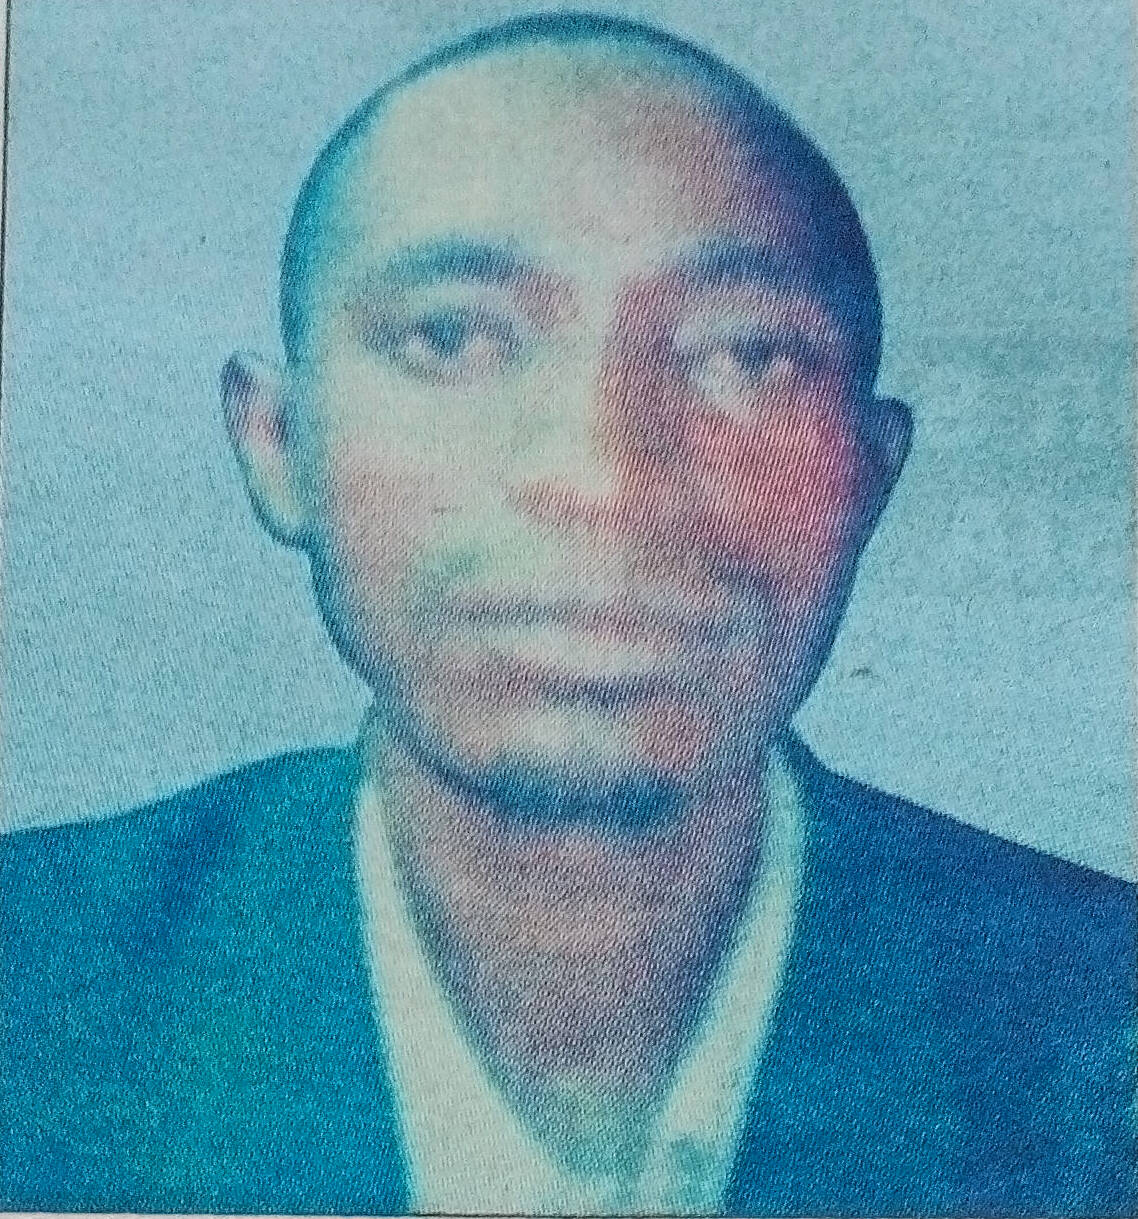 Obituary Image of Jeremiah Ontere Ogata